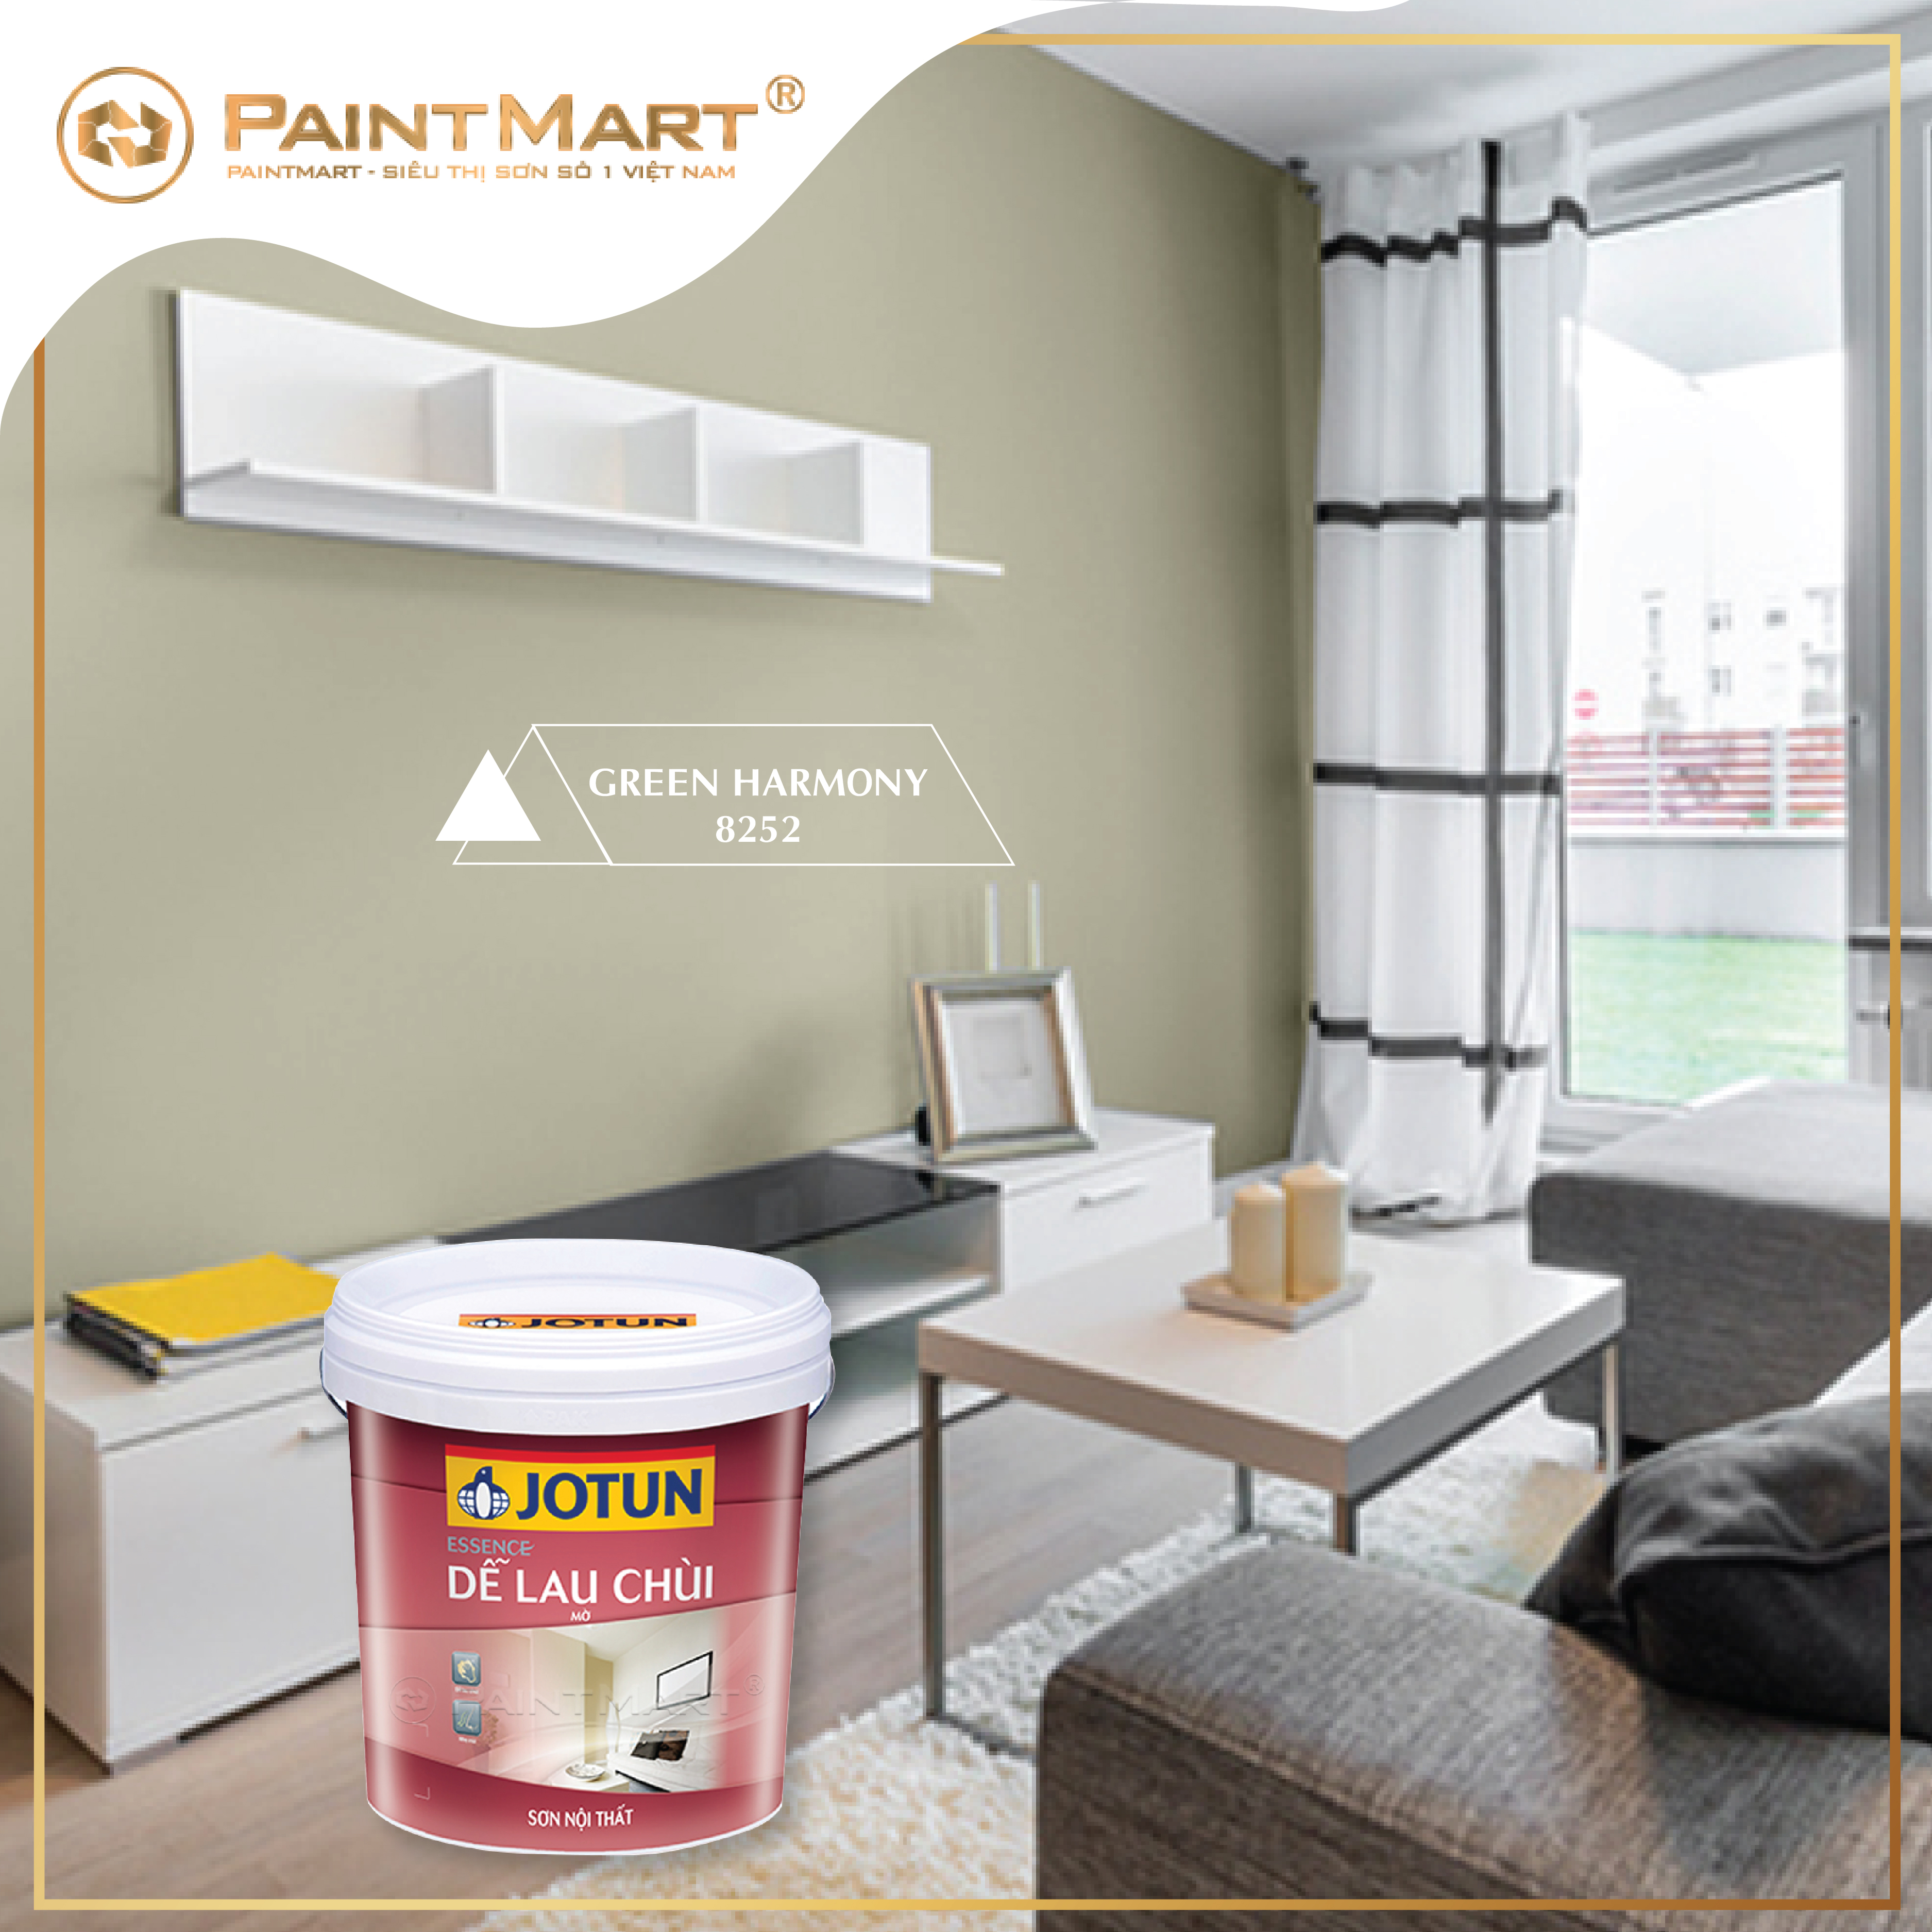 Bạn muốn biến căn phòng của mình thành một nơi ấm cúng, sang trọng và đẹp mắt? Hãy sử dụng sơn Jotun màu gỗ nội thất đẹp để tạo điểm nhấn cho căn phòng của bạn. Để xem hình ảnh liên quan đến từ khóa này, hãy nhấp vào đây.